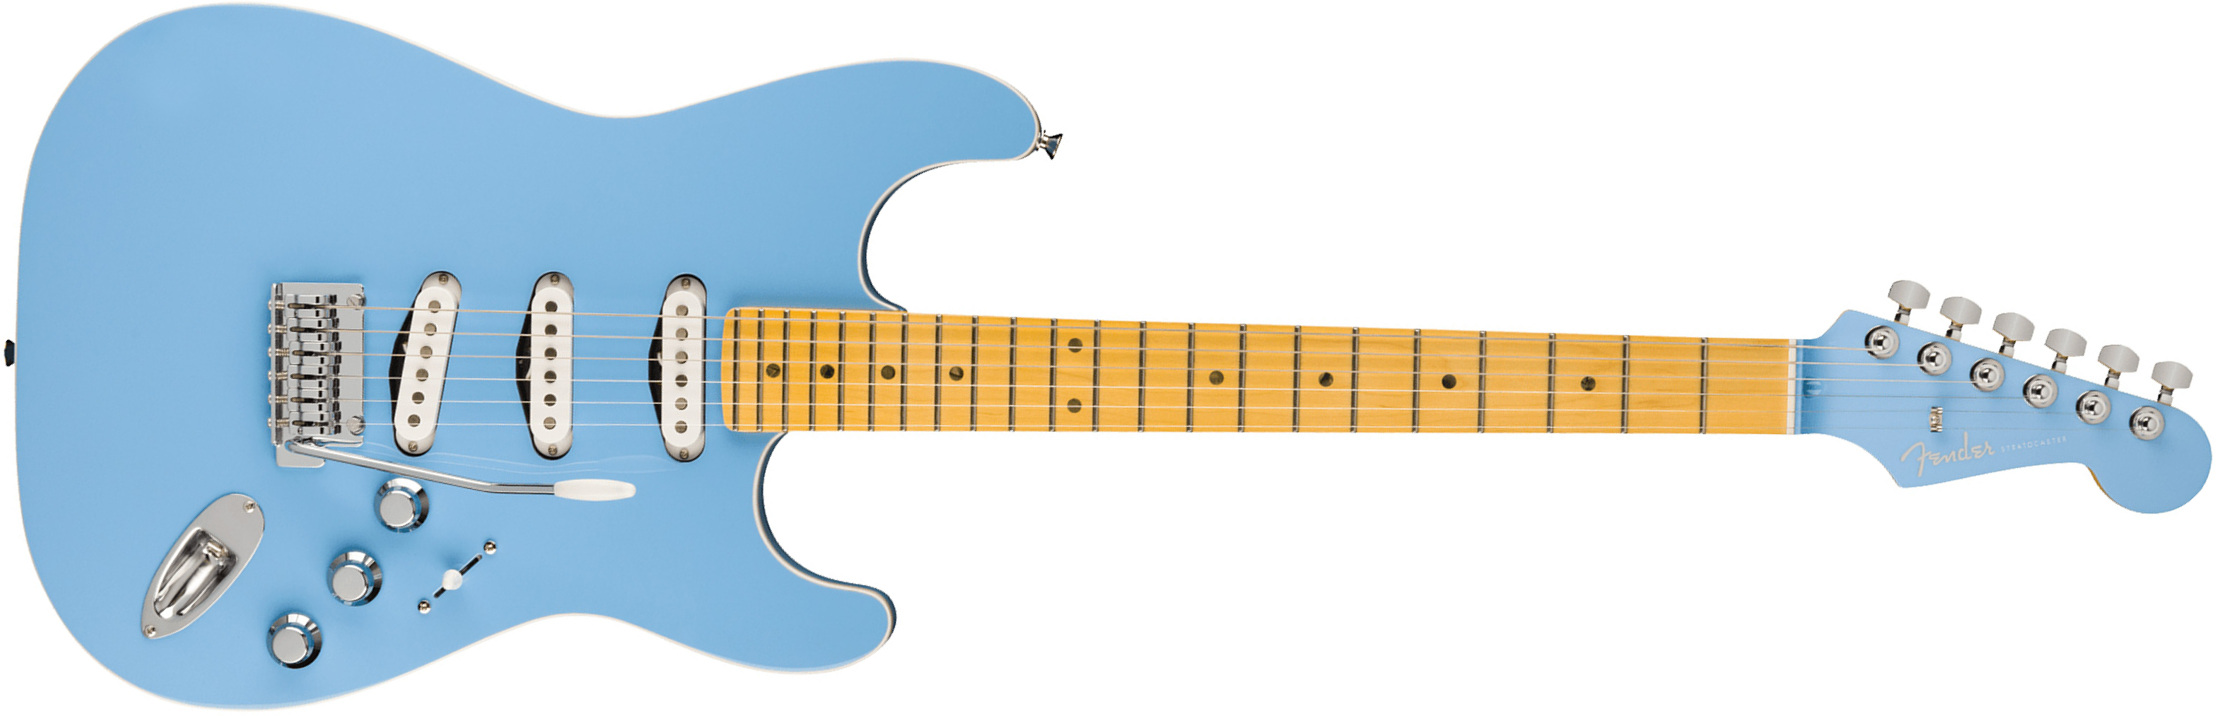 Fender Strat Aerodyne Special Jap 3s Trem Mn - California Blue - Elektrische gitaar in Str-vorm - Main picture